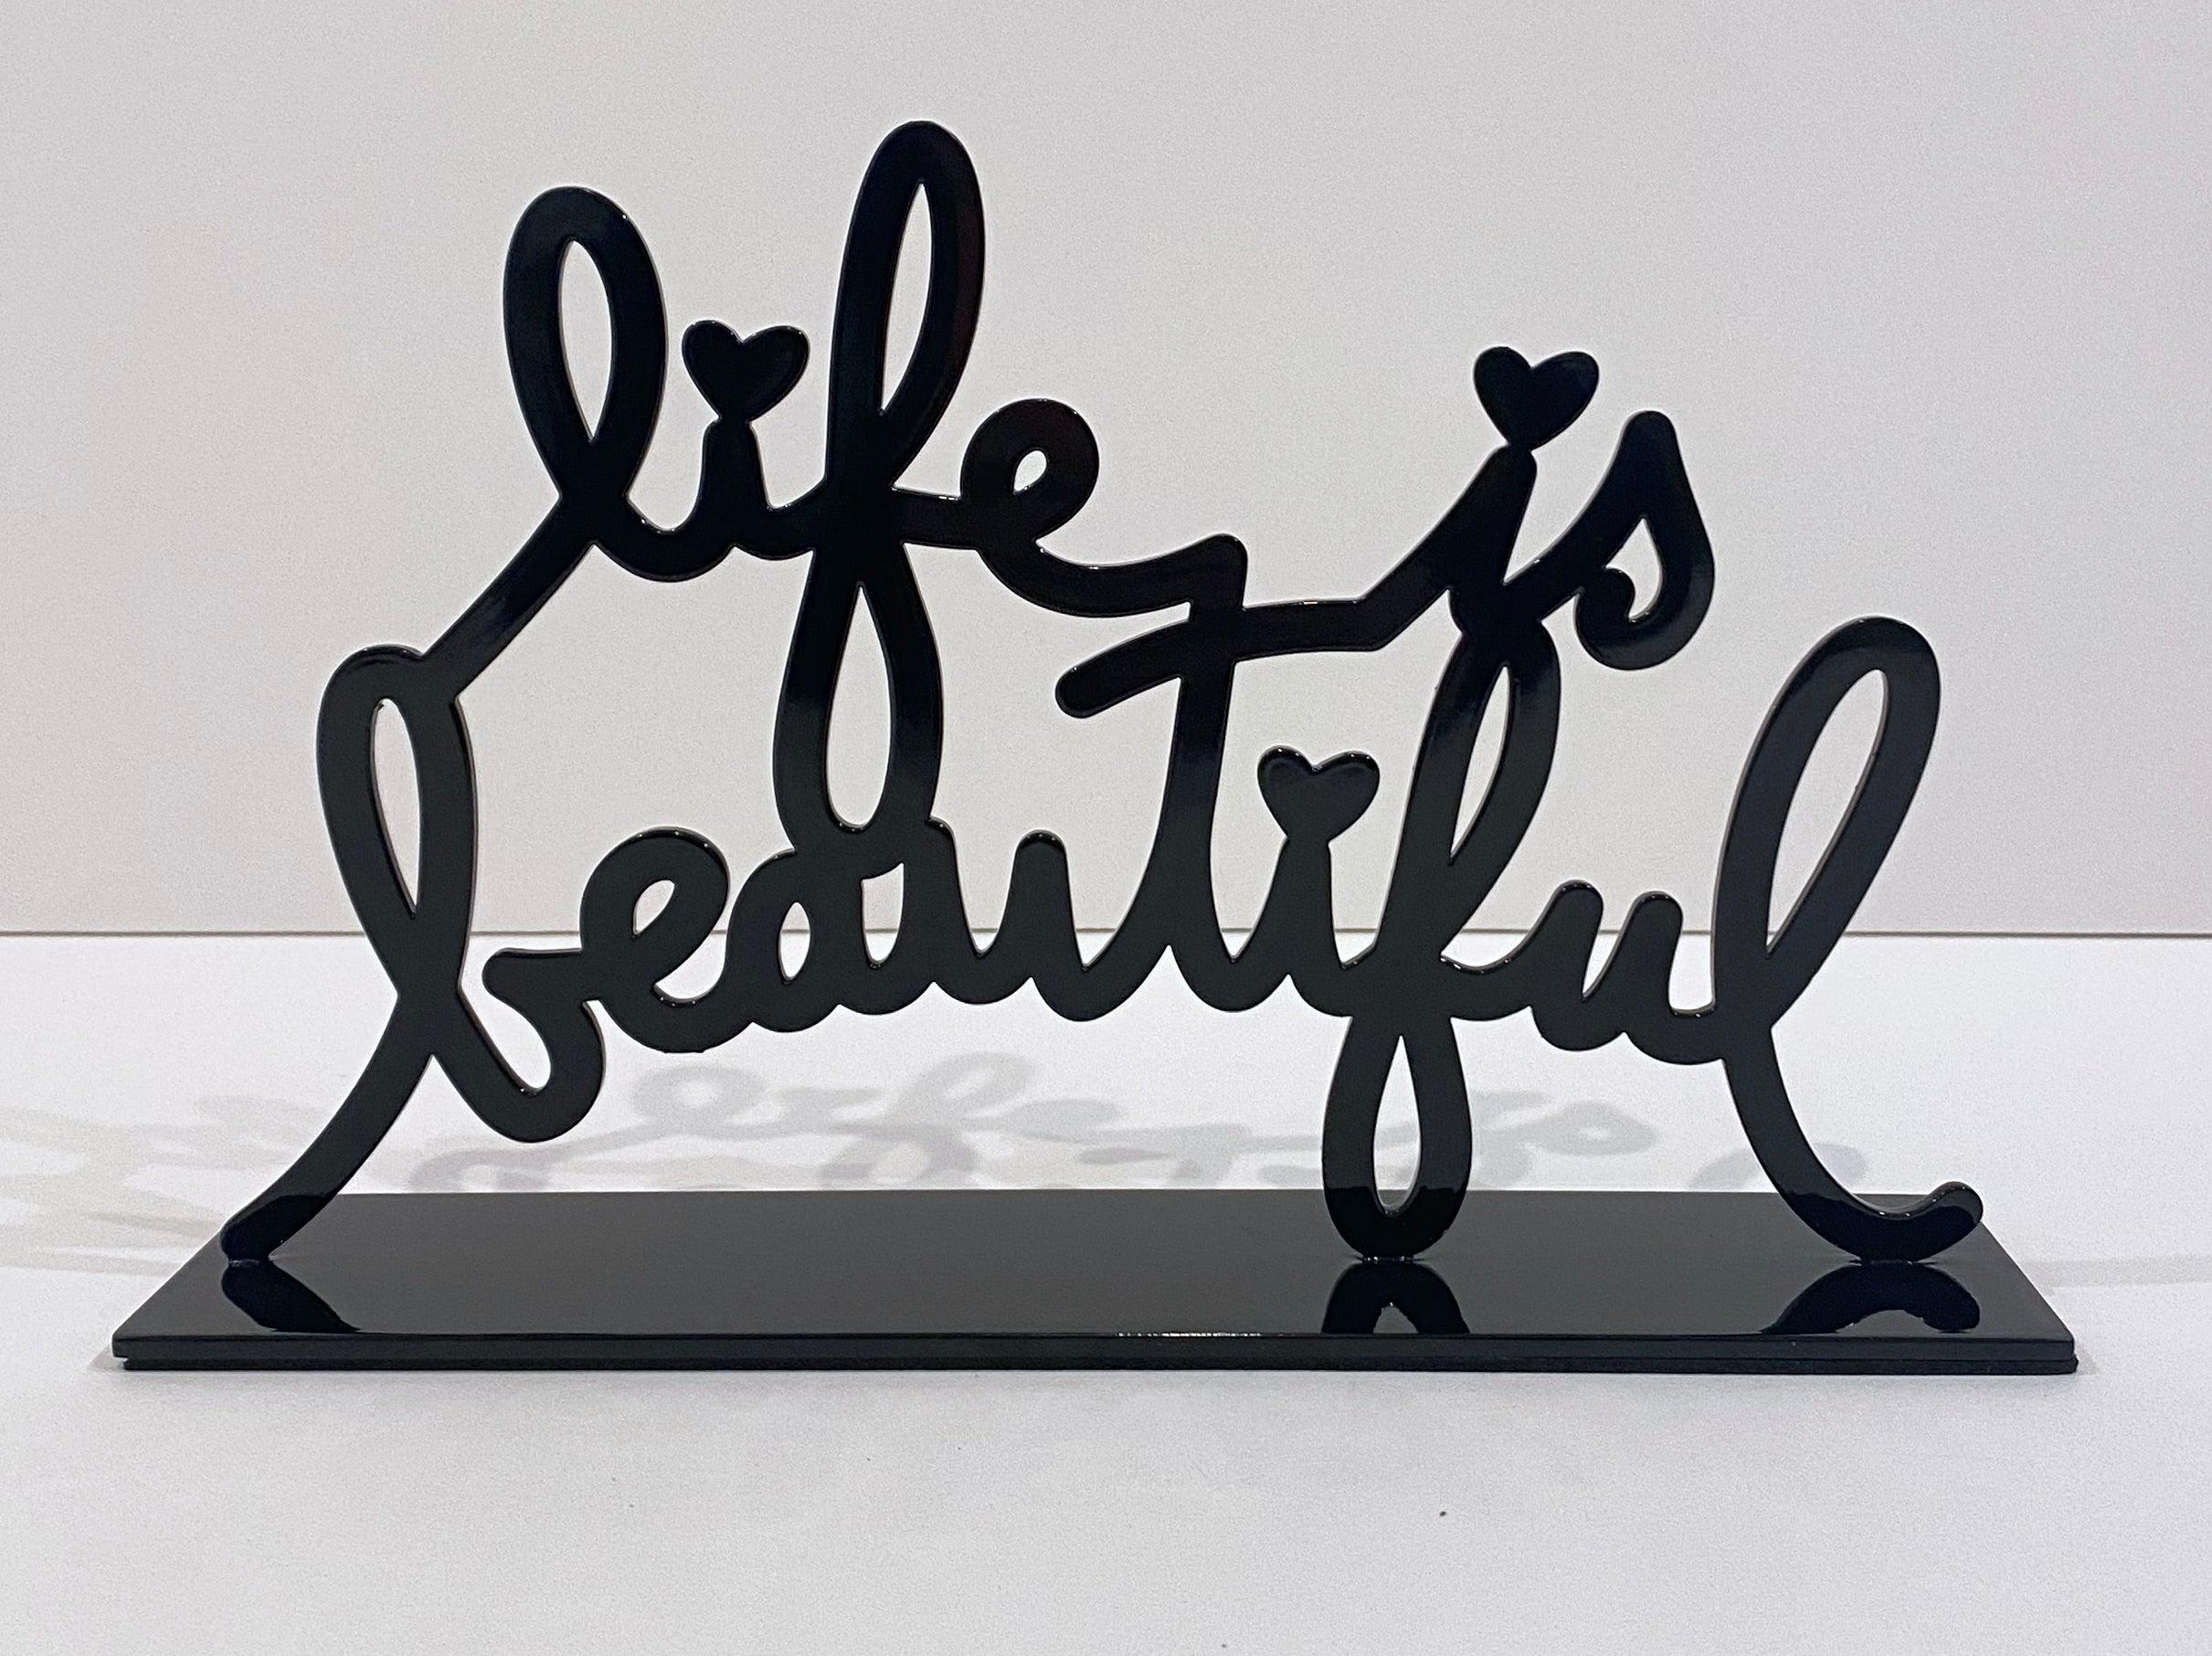 Das Leben ist schön (Schwarz) – Sculpture von Mr. Brainwash